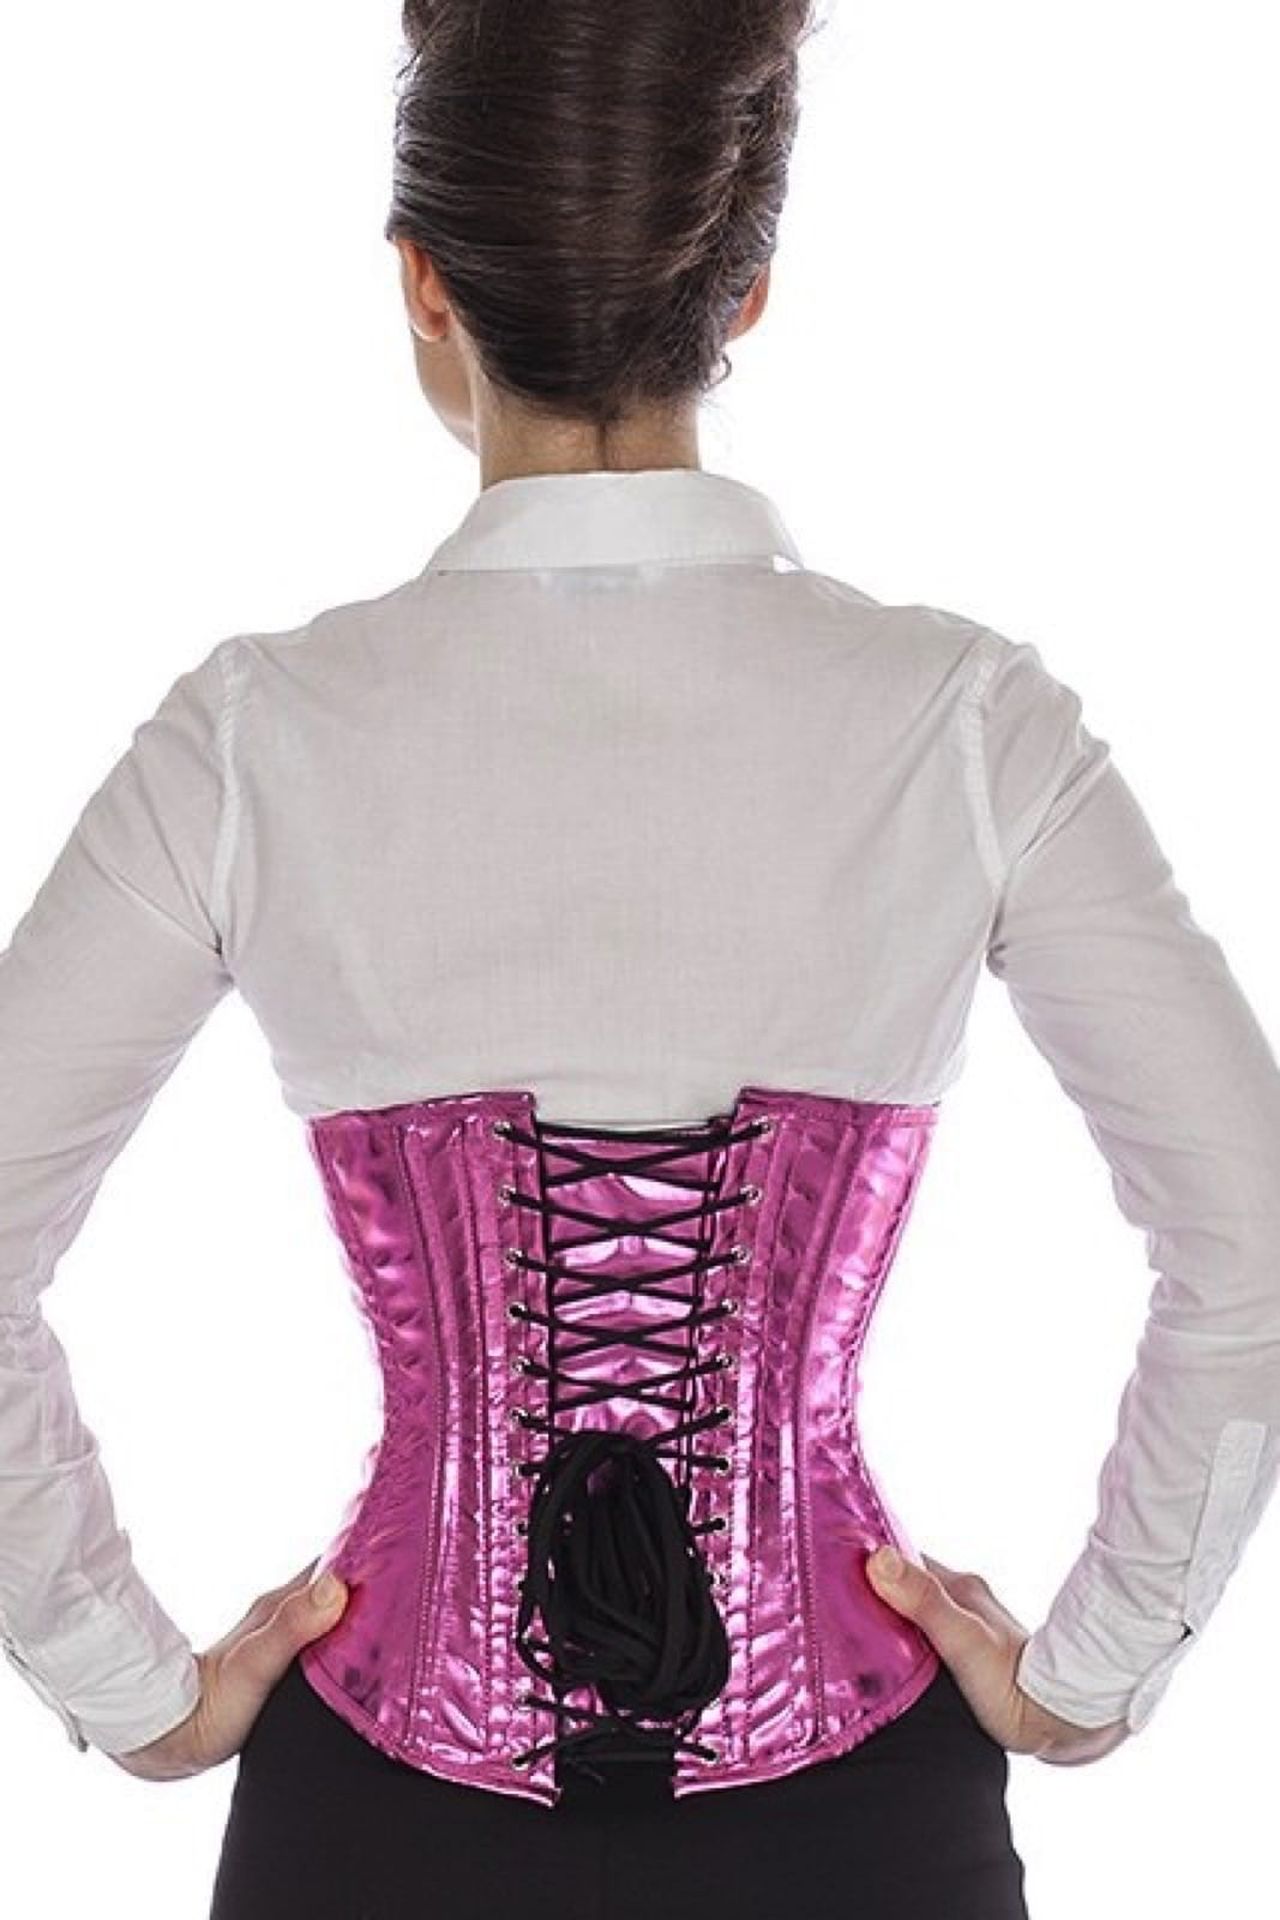 Corse pink glitter charol bajo pecho corset puG7